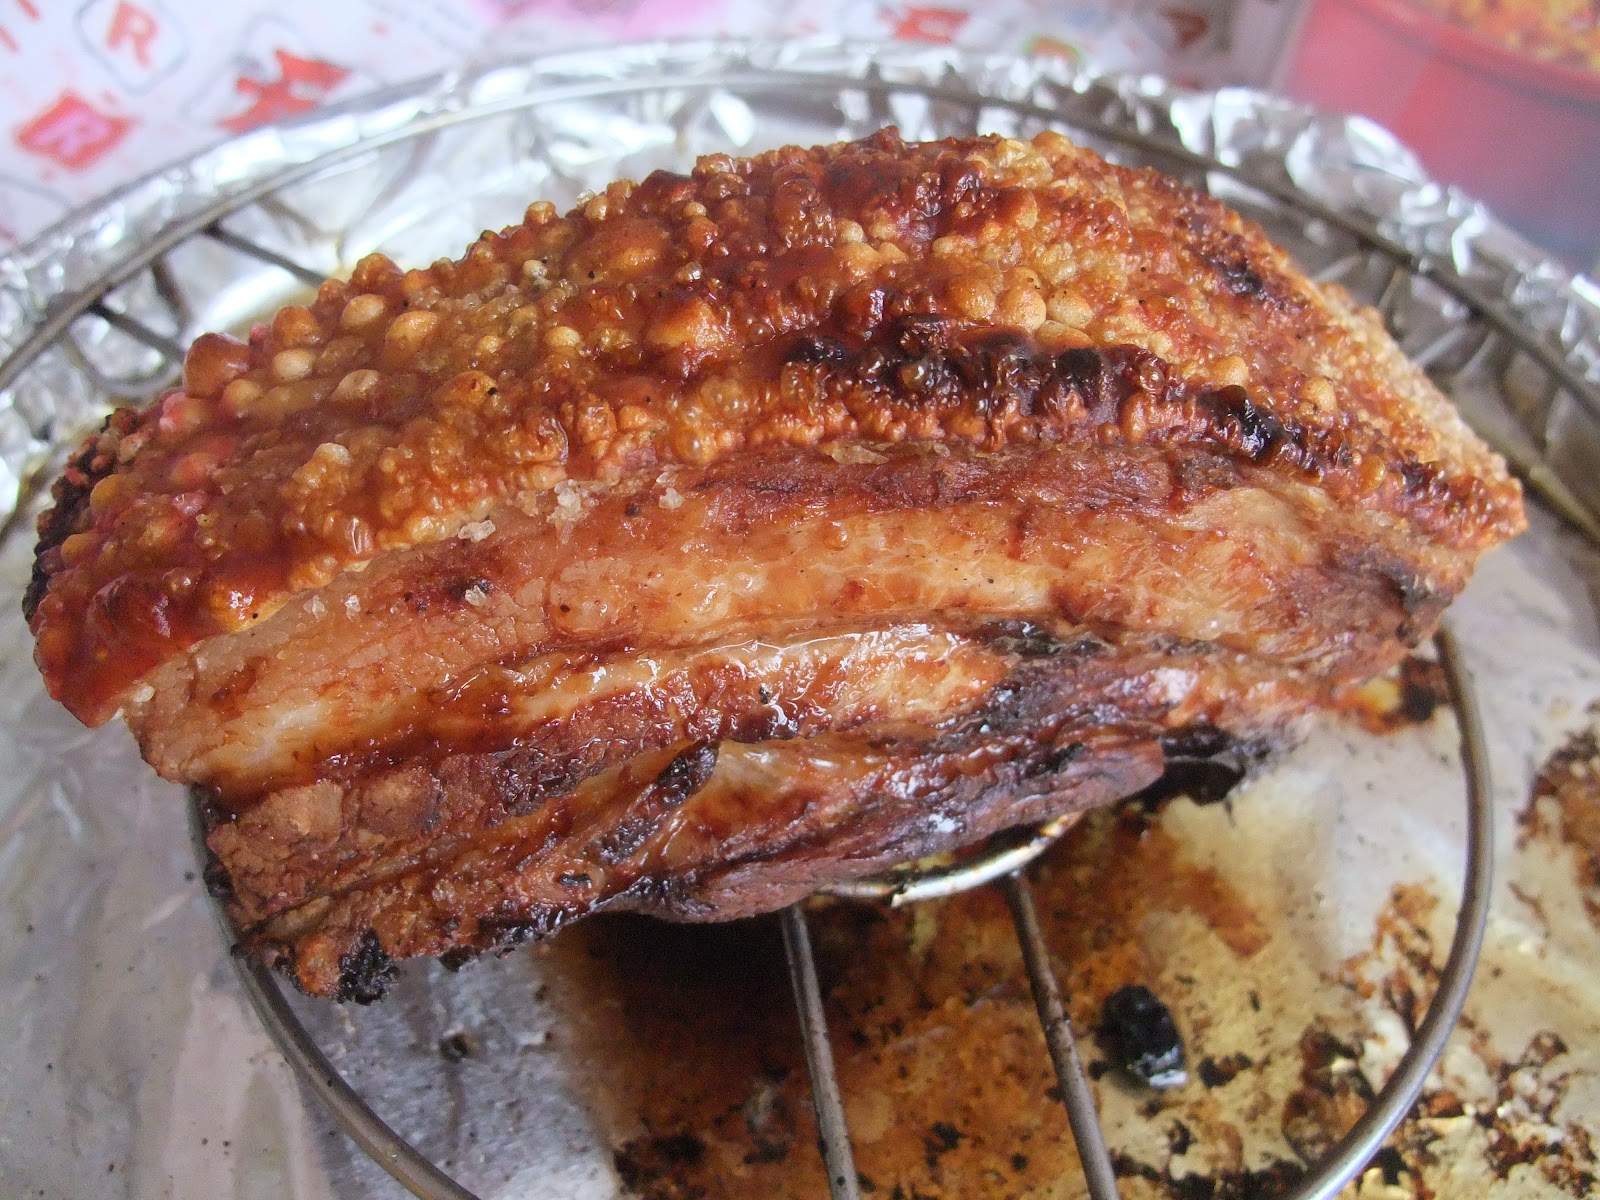 香草脆皮豬腩肉食譜、做法 | 林愛煮CookingLam的Cook1Cook食譜分享